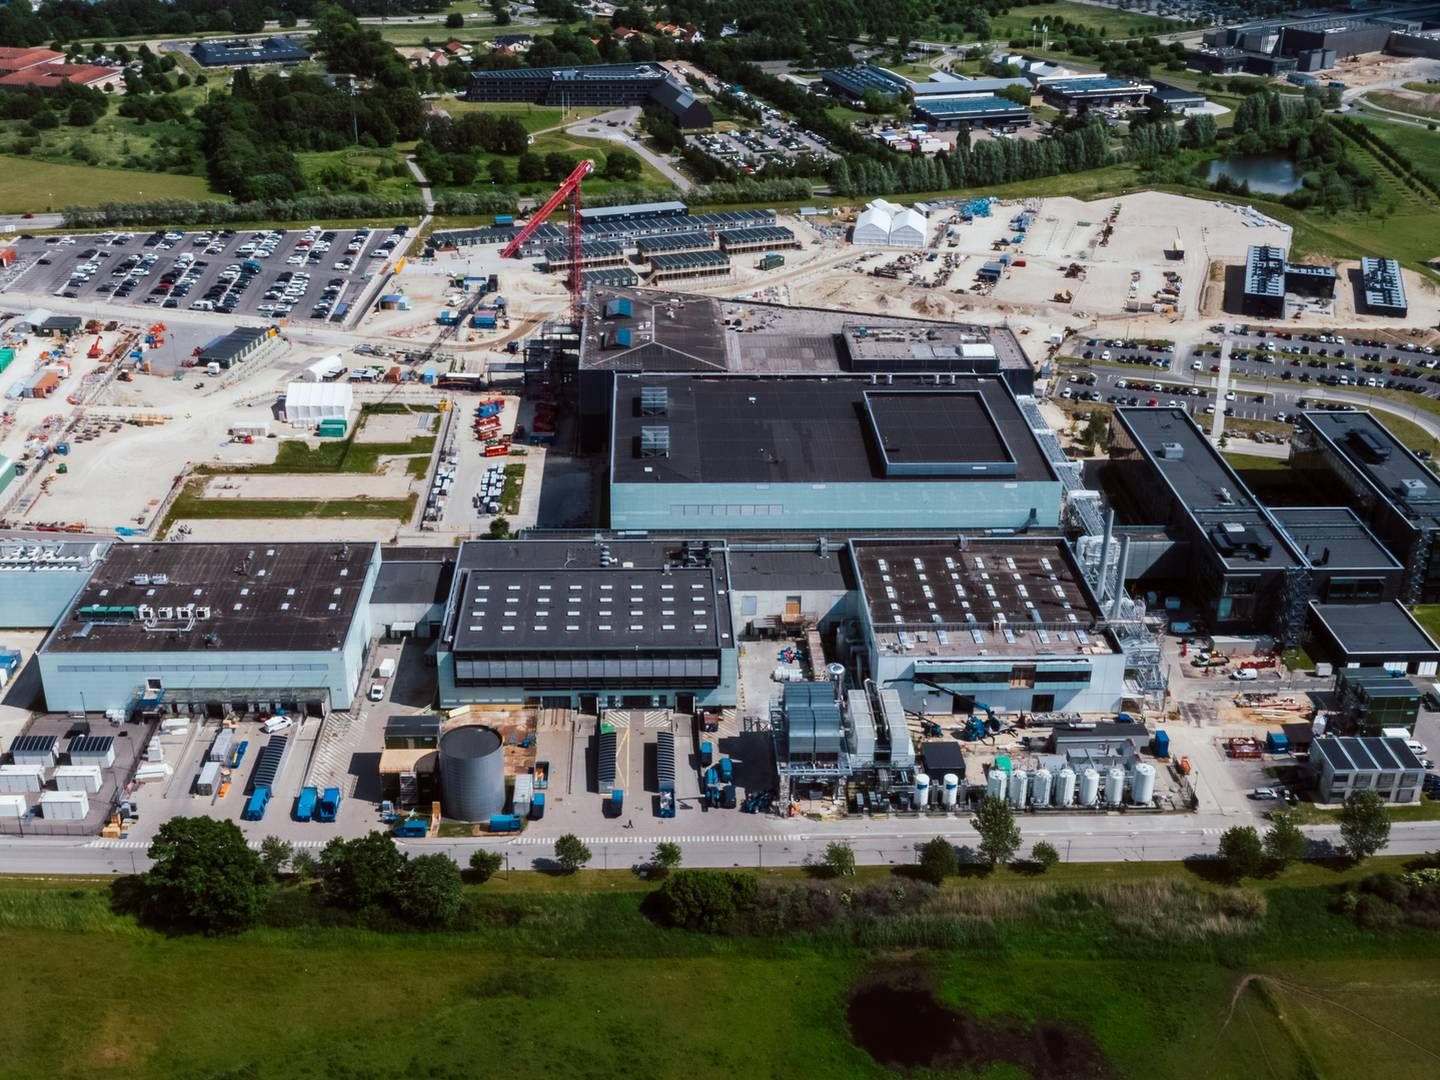 1500 ansatte er planlagt på Fujilfilms nyeste fabrik i Hillerød. | Foto: Fujifilm Diosynth Biotechnologies / PR